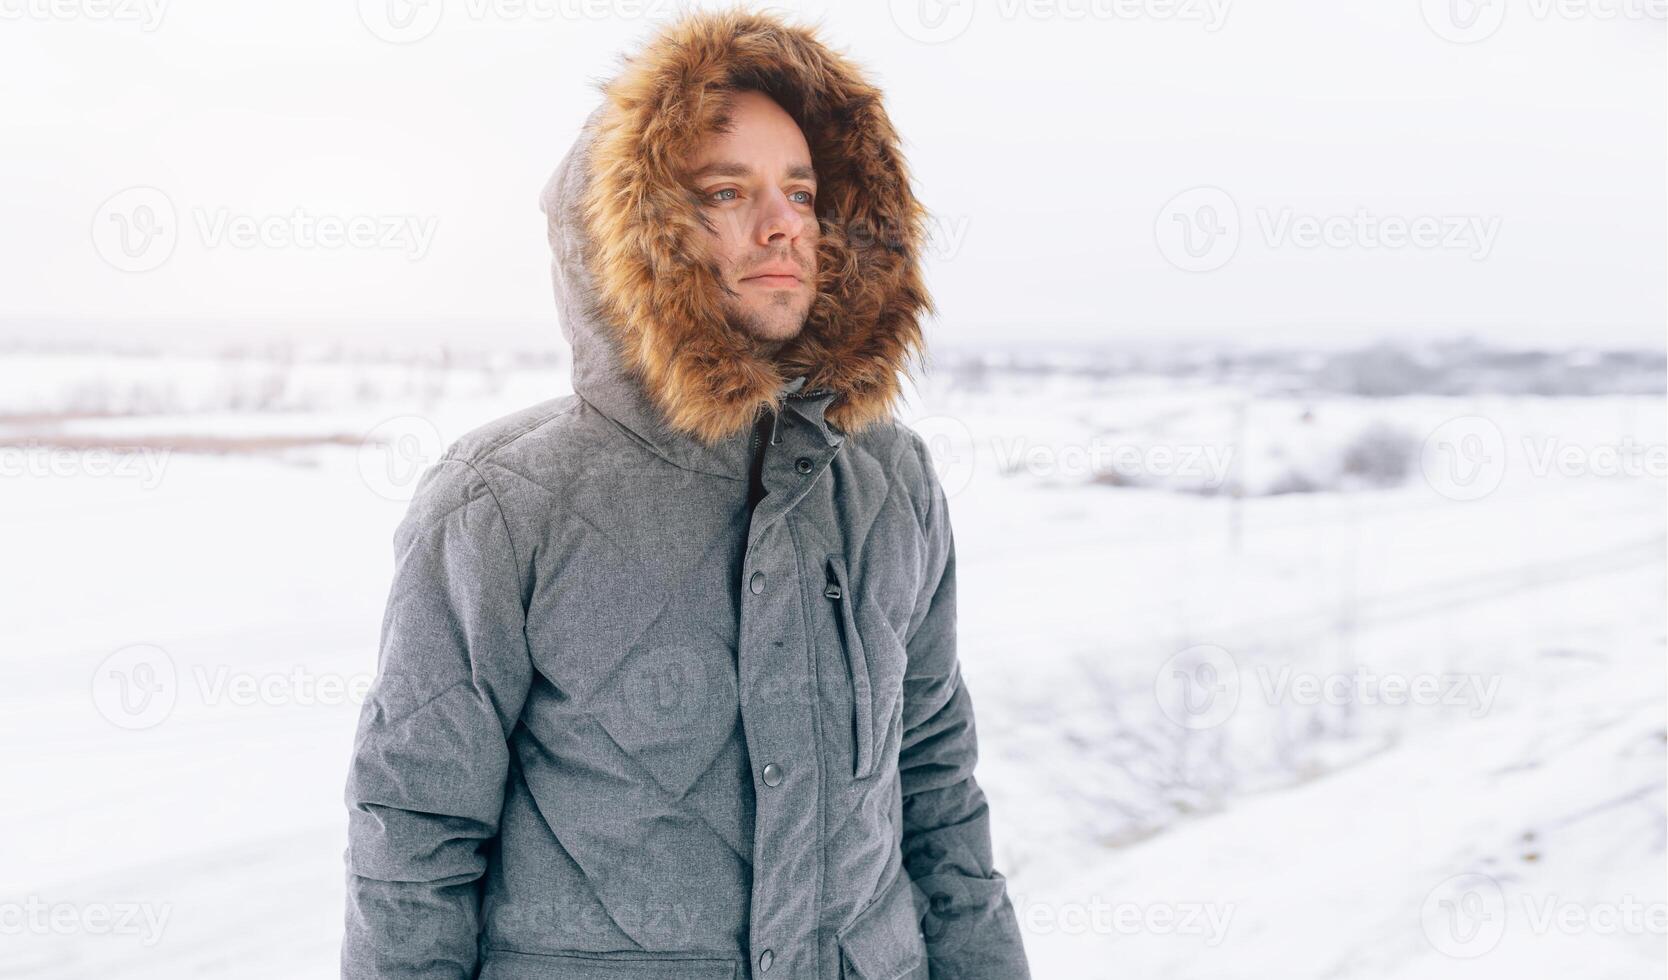 Mann tragen grau Winter Jacke mit Kapuze auf im Winter Schnee foto